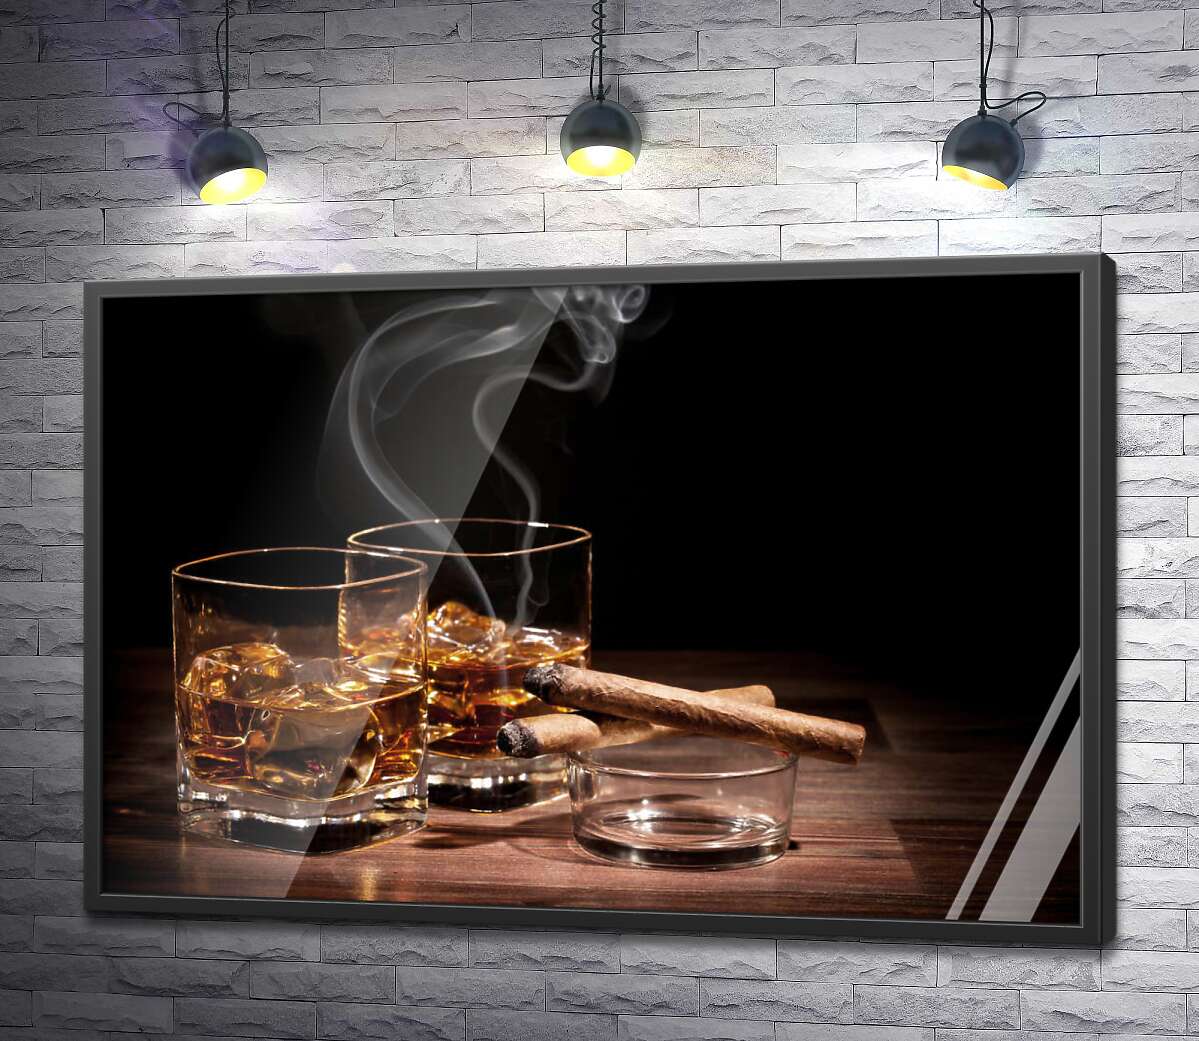 постер Две сигары дымятся возле стаканов с холодным виски